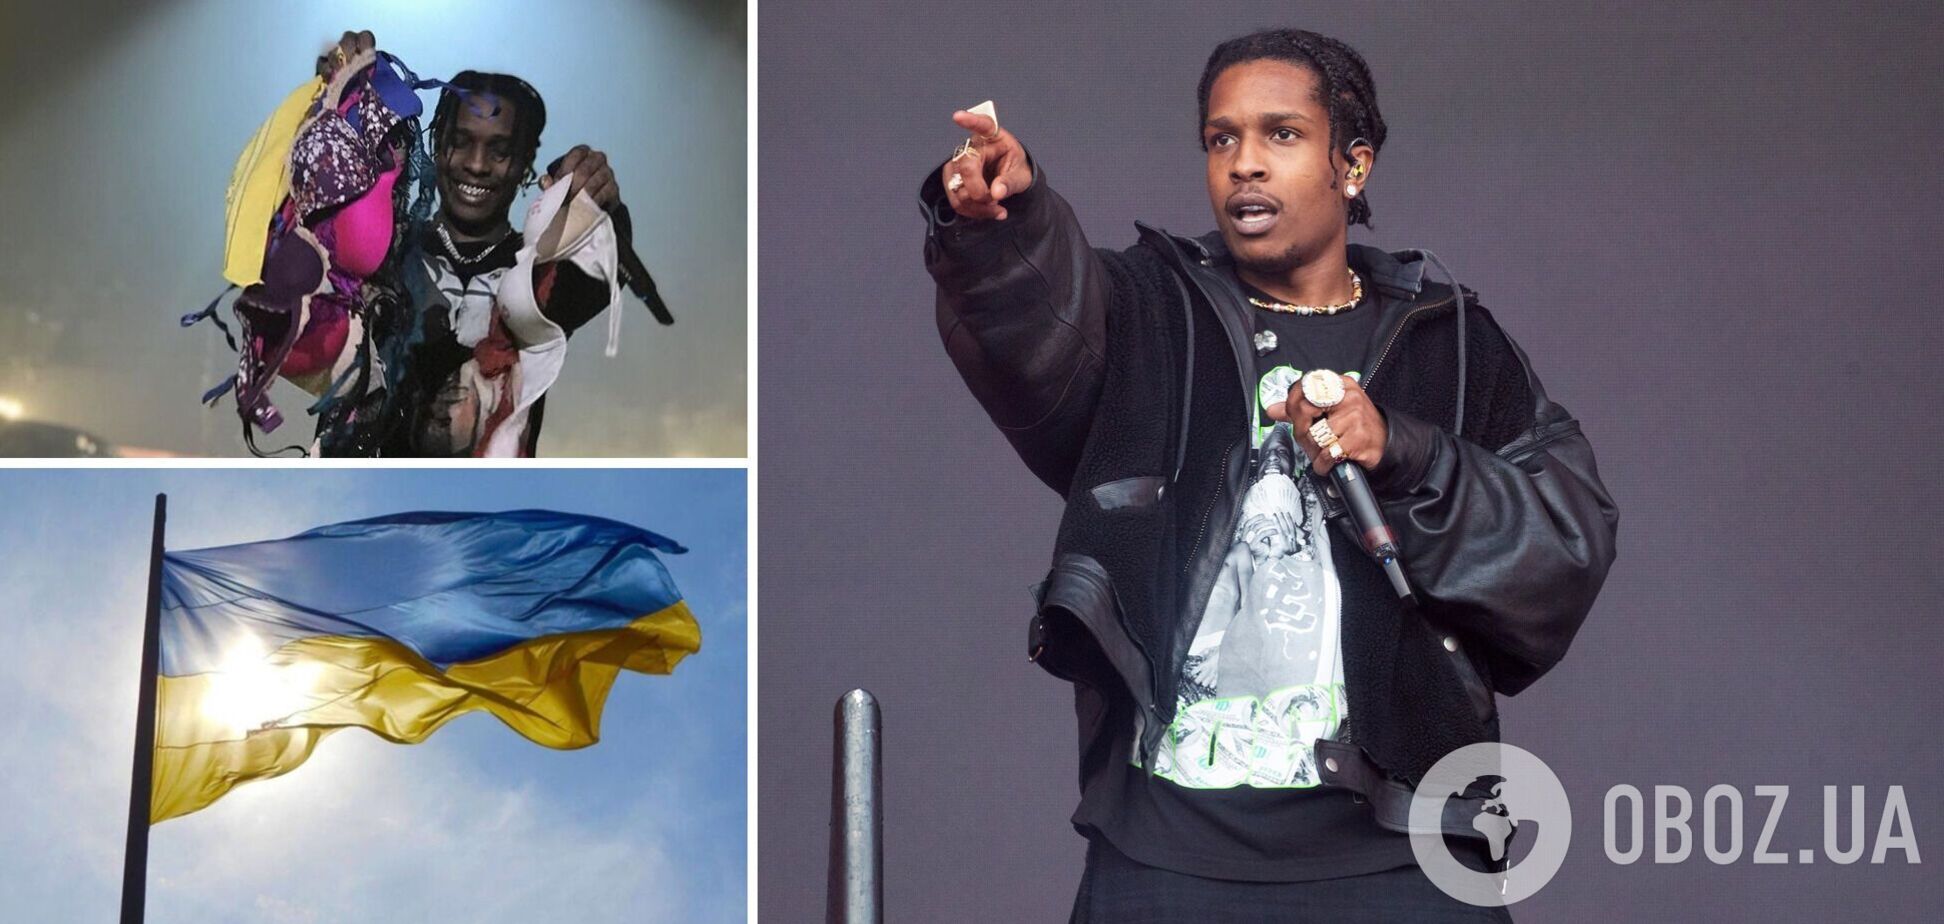 A$AP Rocky витягнув з-під прапора України бюстгальтери фанаток, а стяг залишив на підлозі